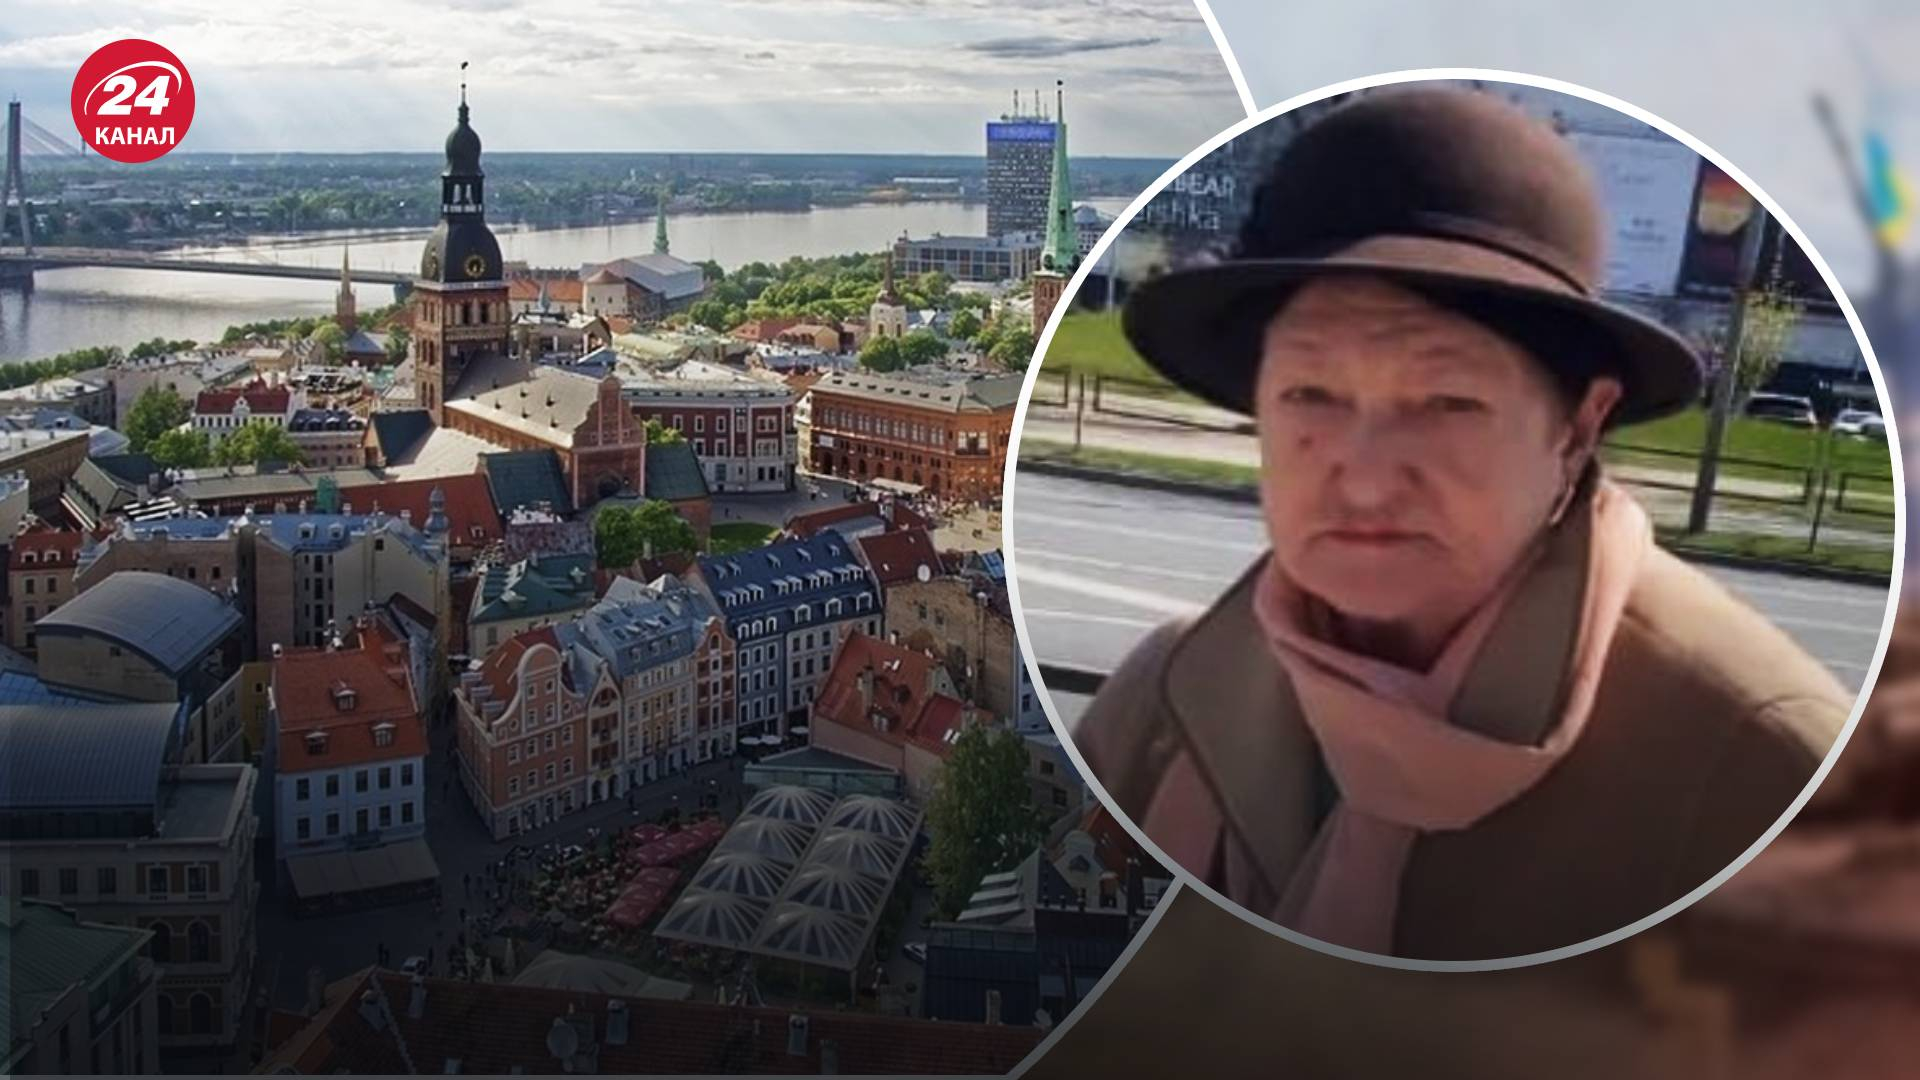 Кидалася грошима й кричала про "самі себе бомбите": у Латвії росіянка накинулася на українку